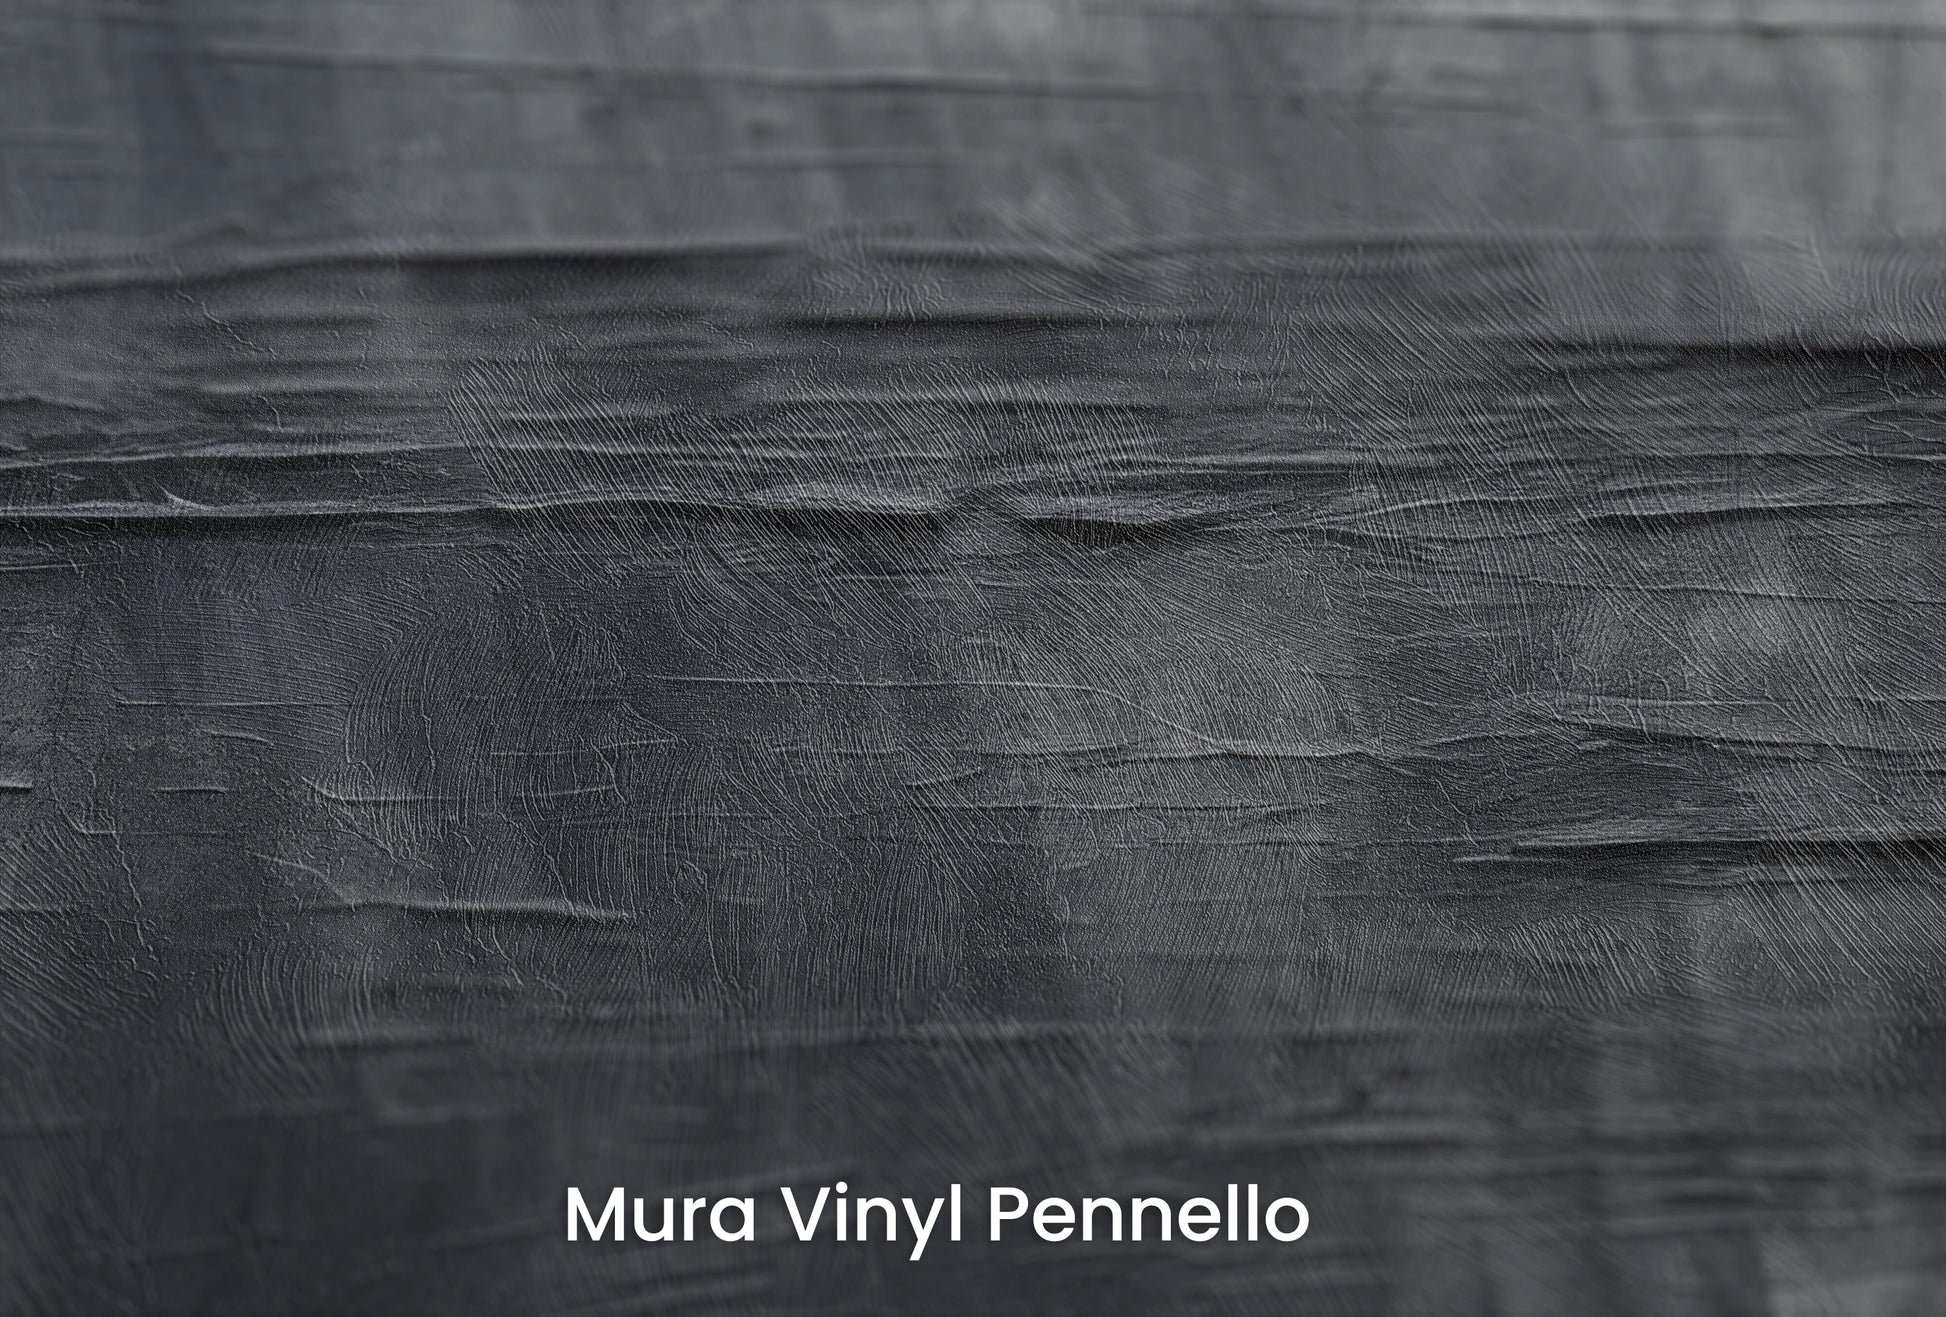 Zbliżenie na artystyczną fototapetę o nazwie Canvas Grayscale na podłożu Mura Vinyl Pennello - faktura pociągnięć pędzla malarskiego.